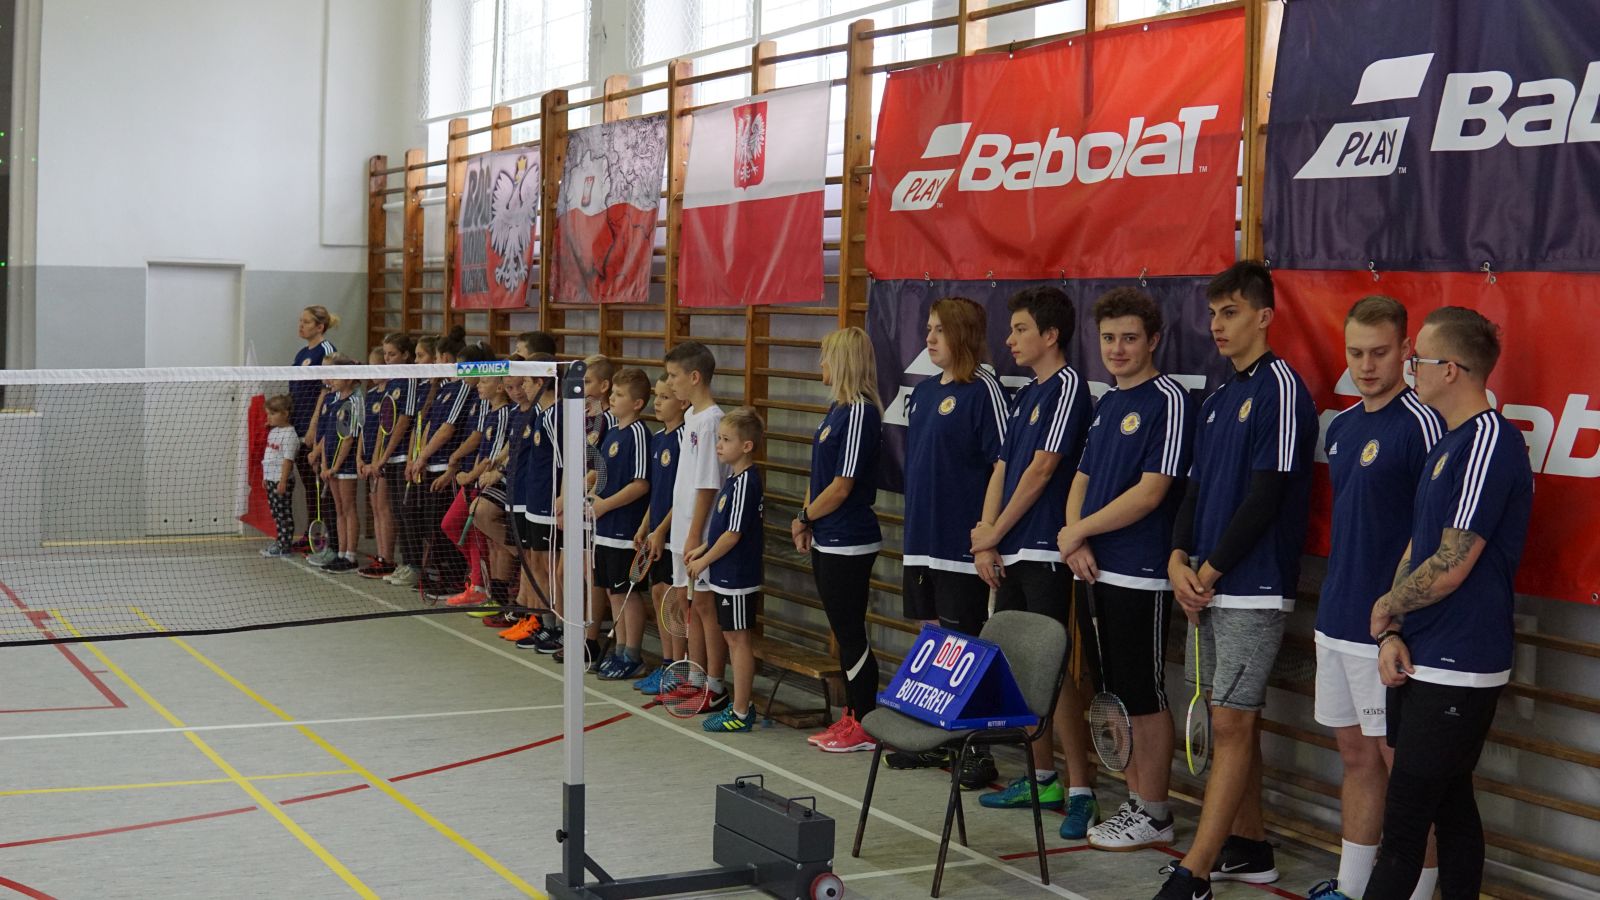 przez sport do niepodlegoci turniej badmintona z okazji 100 rocznicy odzyskania przez polsk niepodlegoci 4 20181112 1839403994